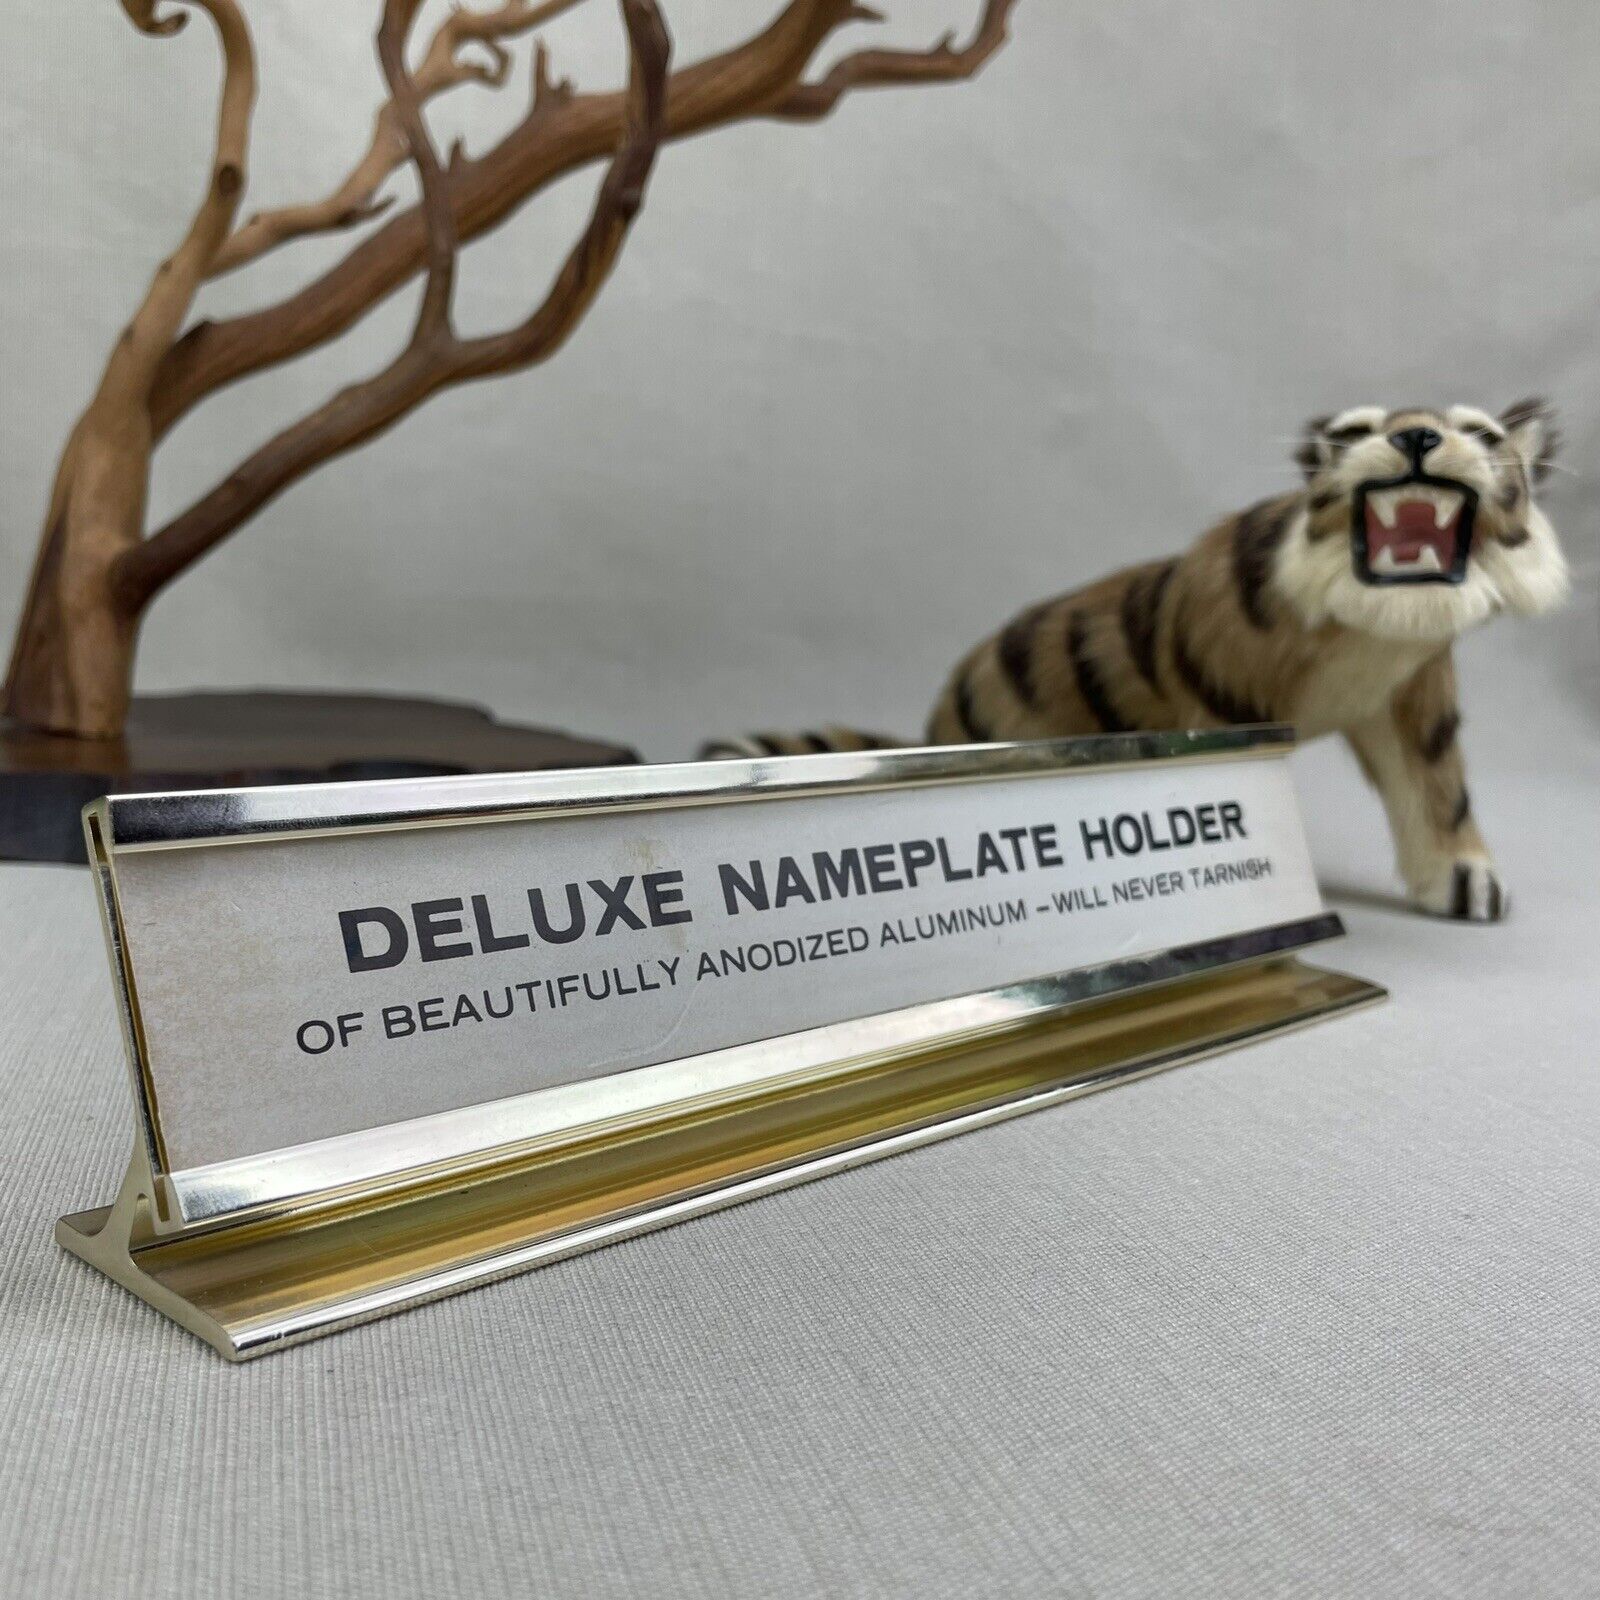 Deluxe Nameplate Holder Vintage Anondized Aluminum Gold Tone Office Desk Name